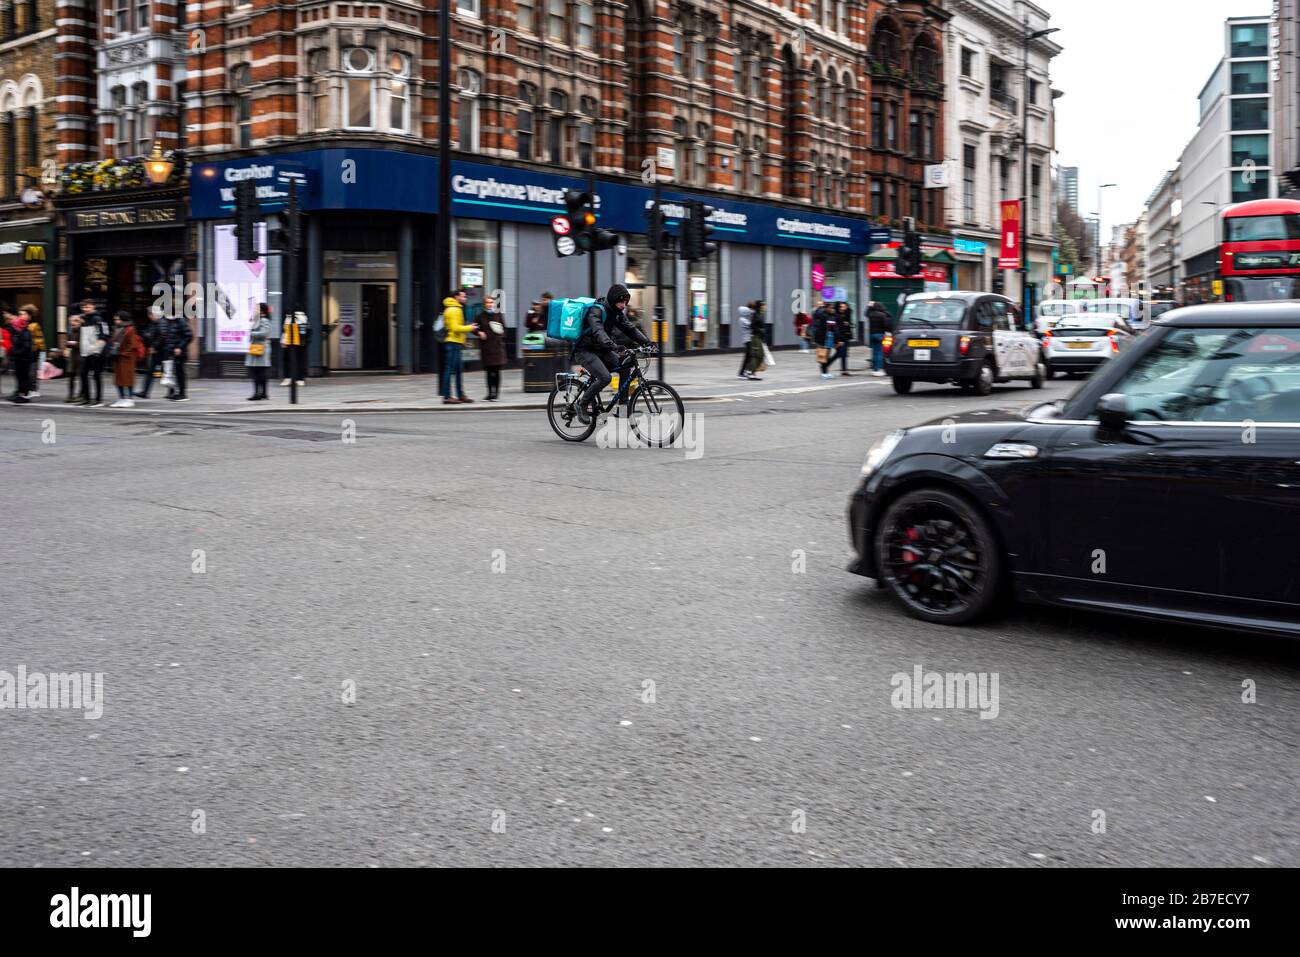 Londra, Regno Unito. 15 marzo 2020. Il ciclista di Deliveroo si precipita attraverso l'incrocio di Tottenham Court Road. Mentre i principali paesi sono in totale blocco, il Regno Unito è ancora Foto Stock